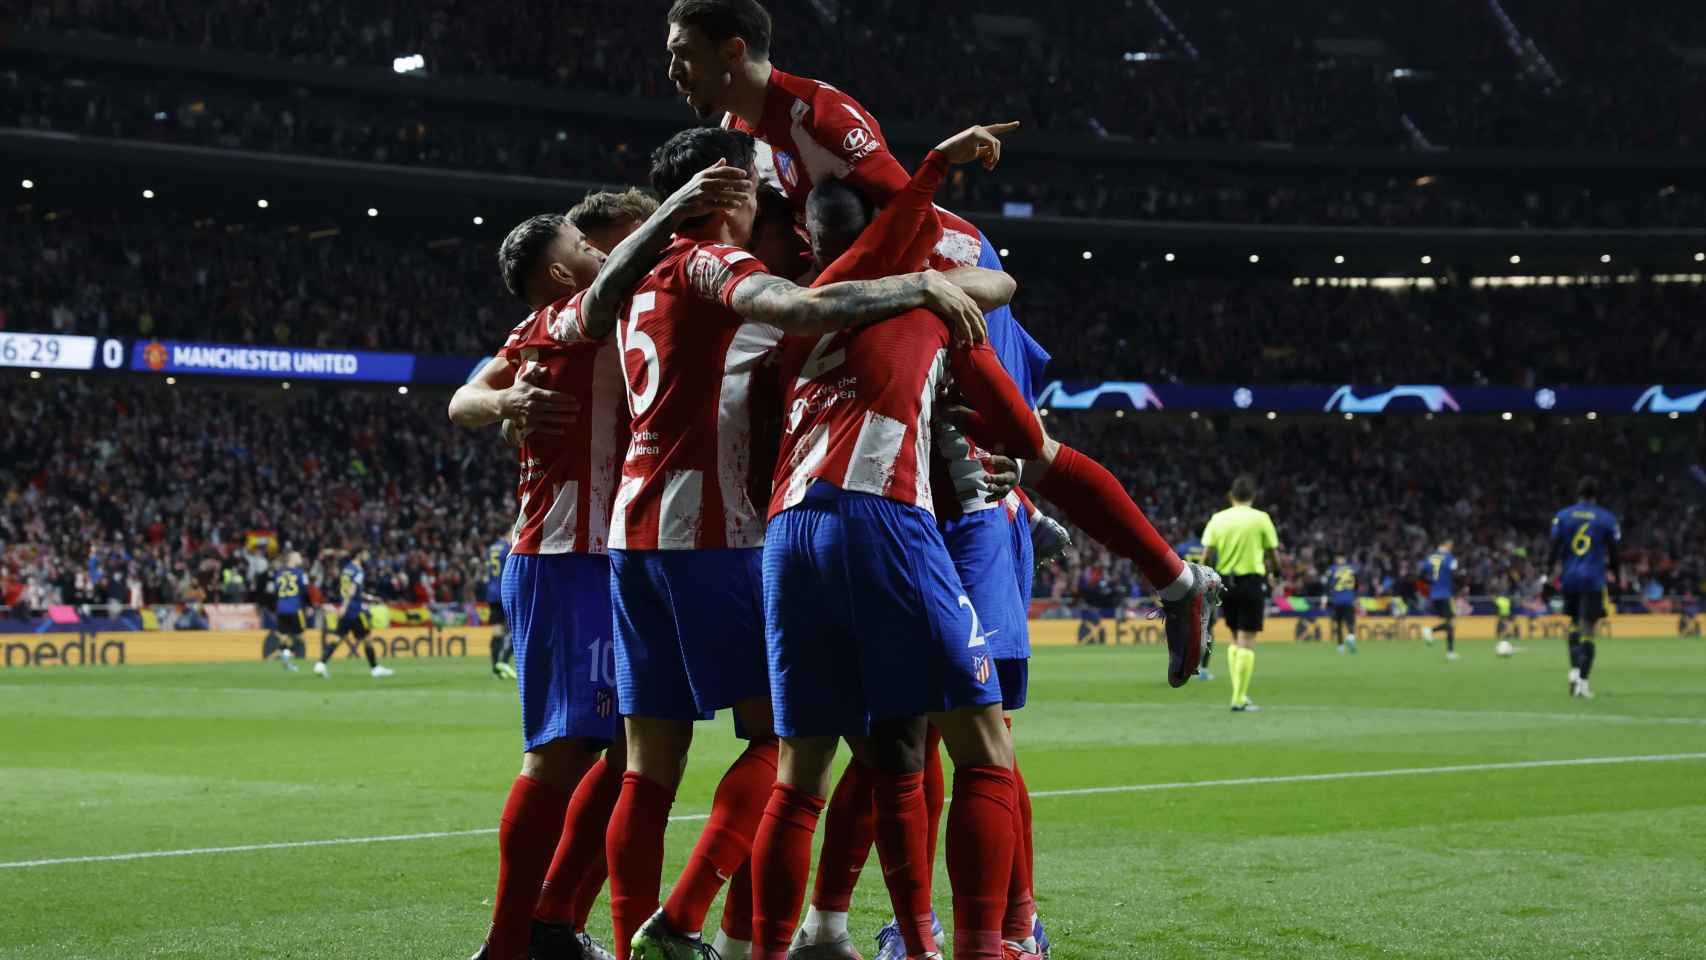 Piña de los jugadores del Atlético de Madrid celebrando su gol